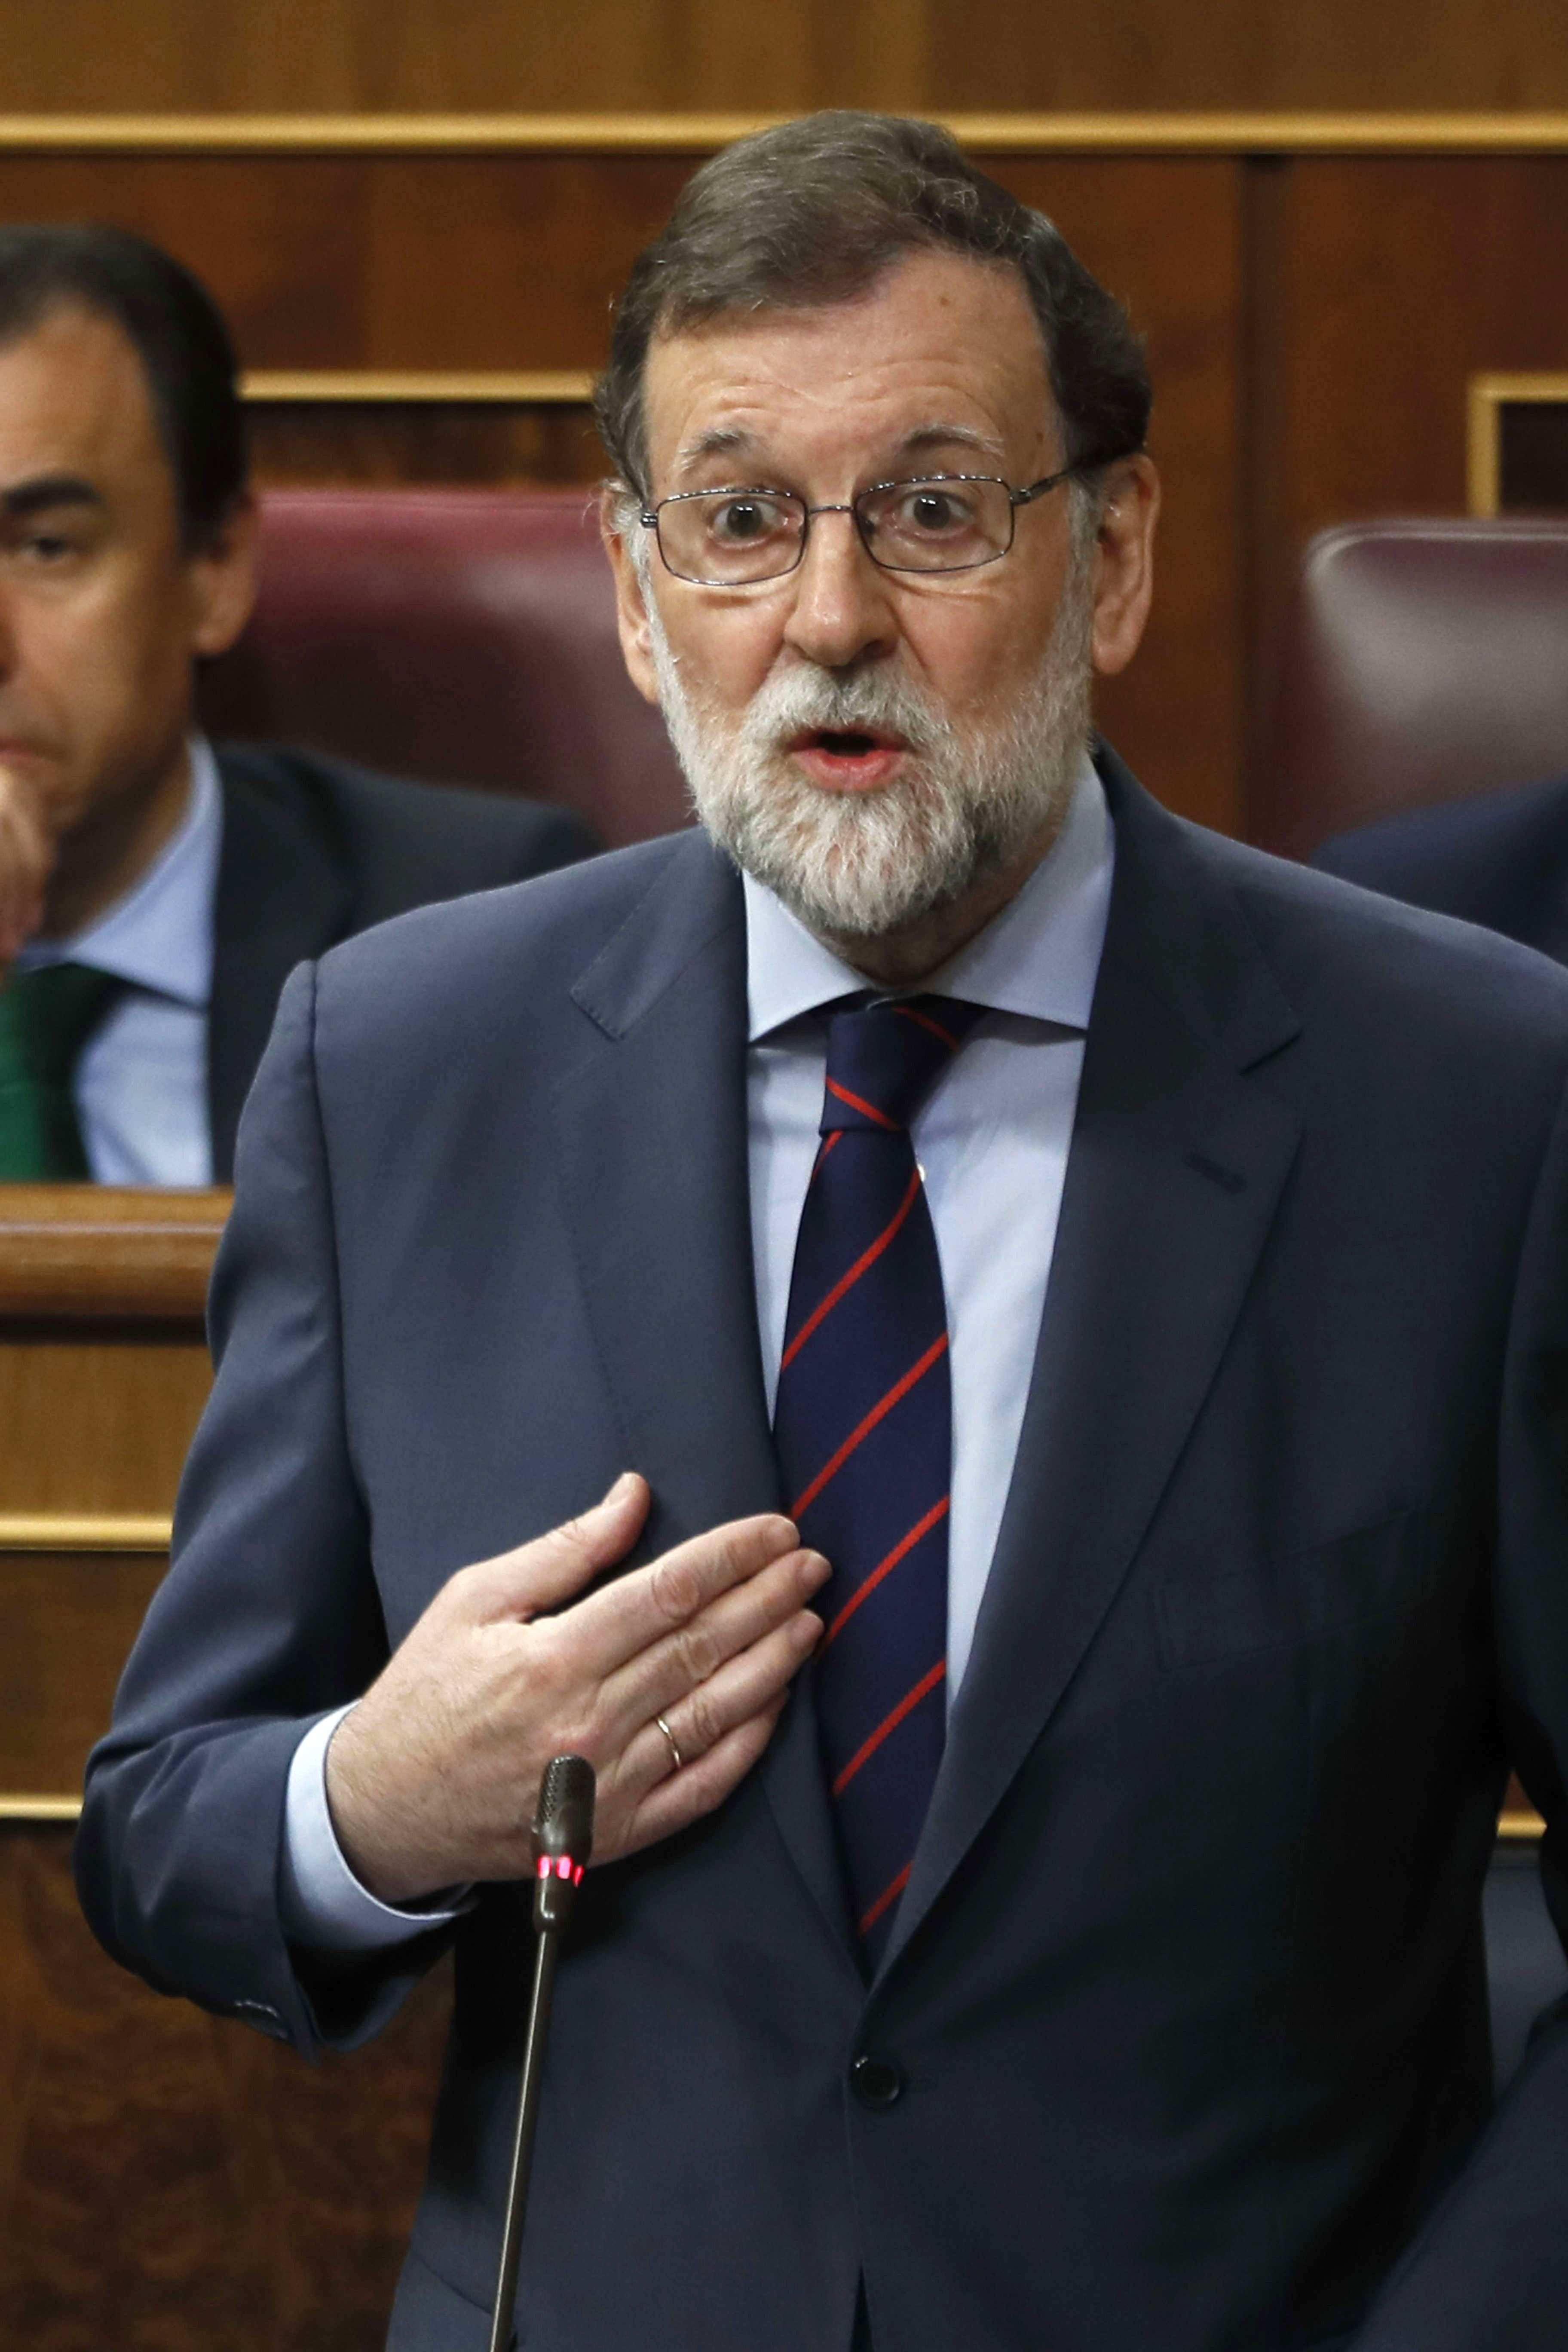 El govern espanyol avisa Torra de "l'obligació de respectar la llei"